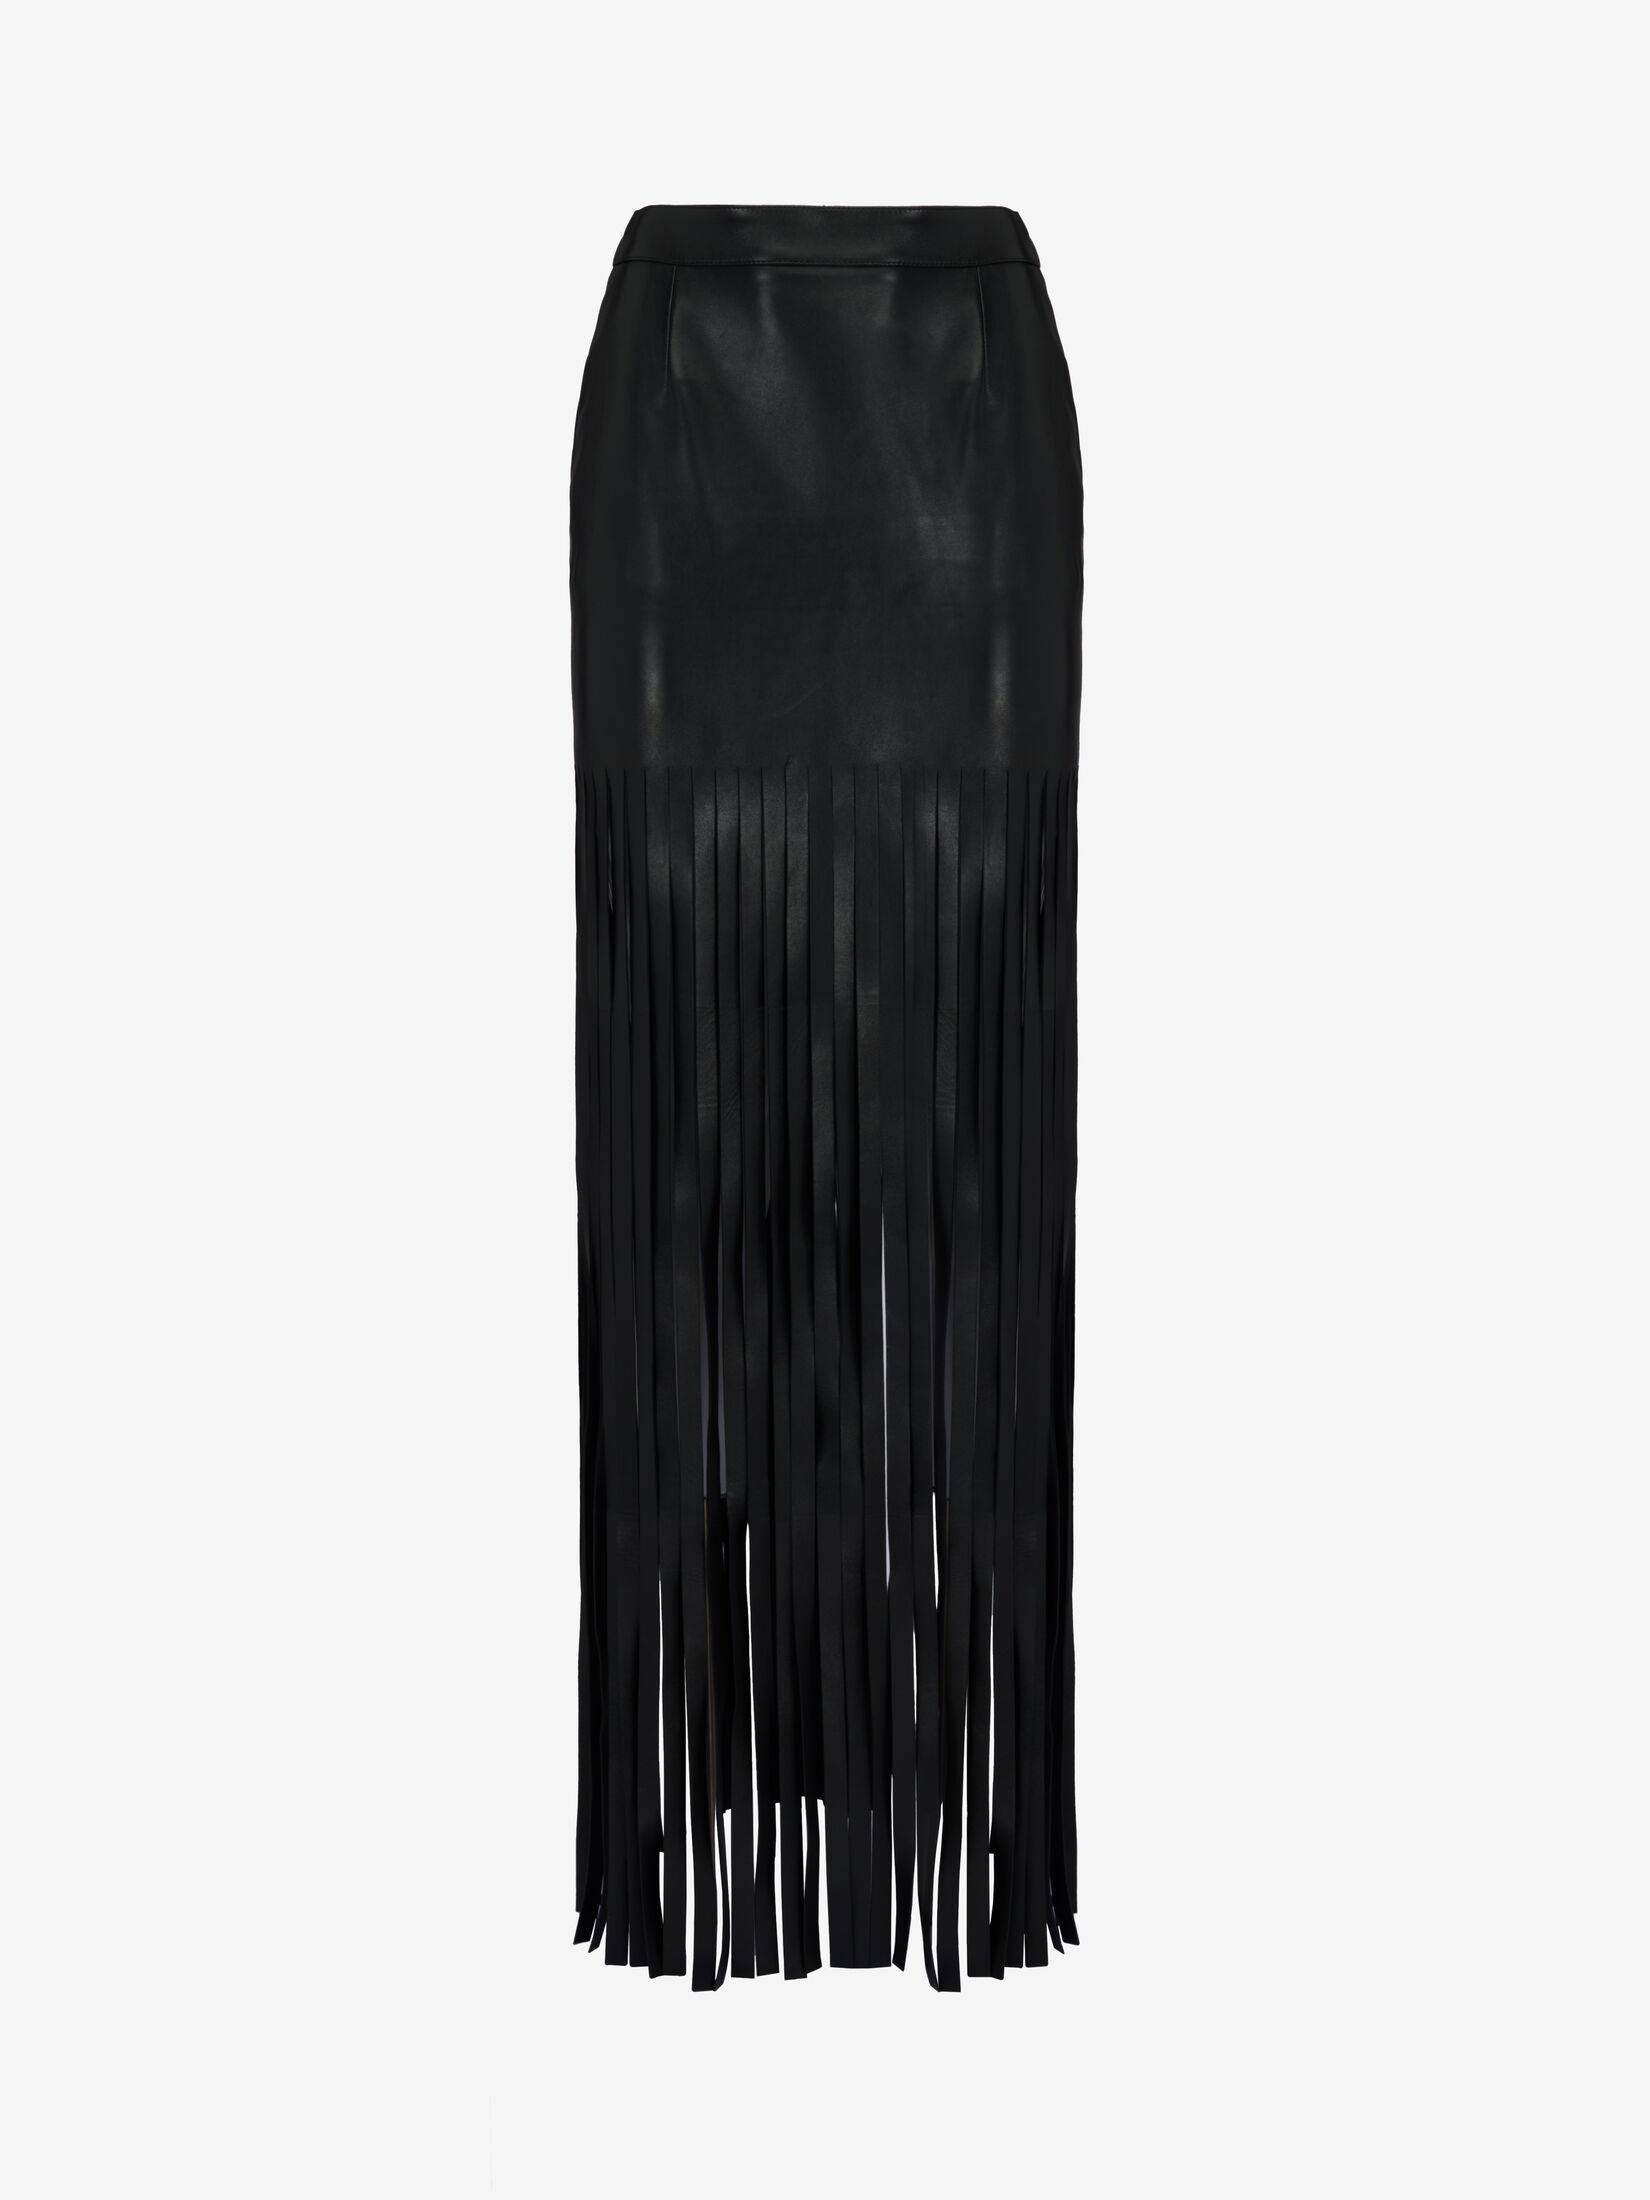 Women's Fringed Leather Skirt in Black - 1